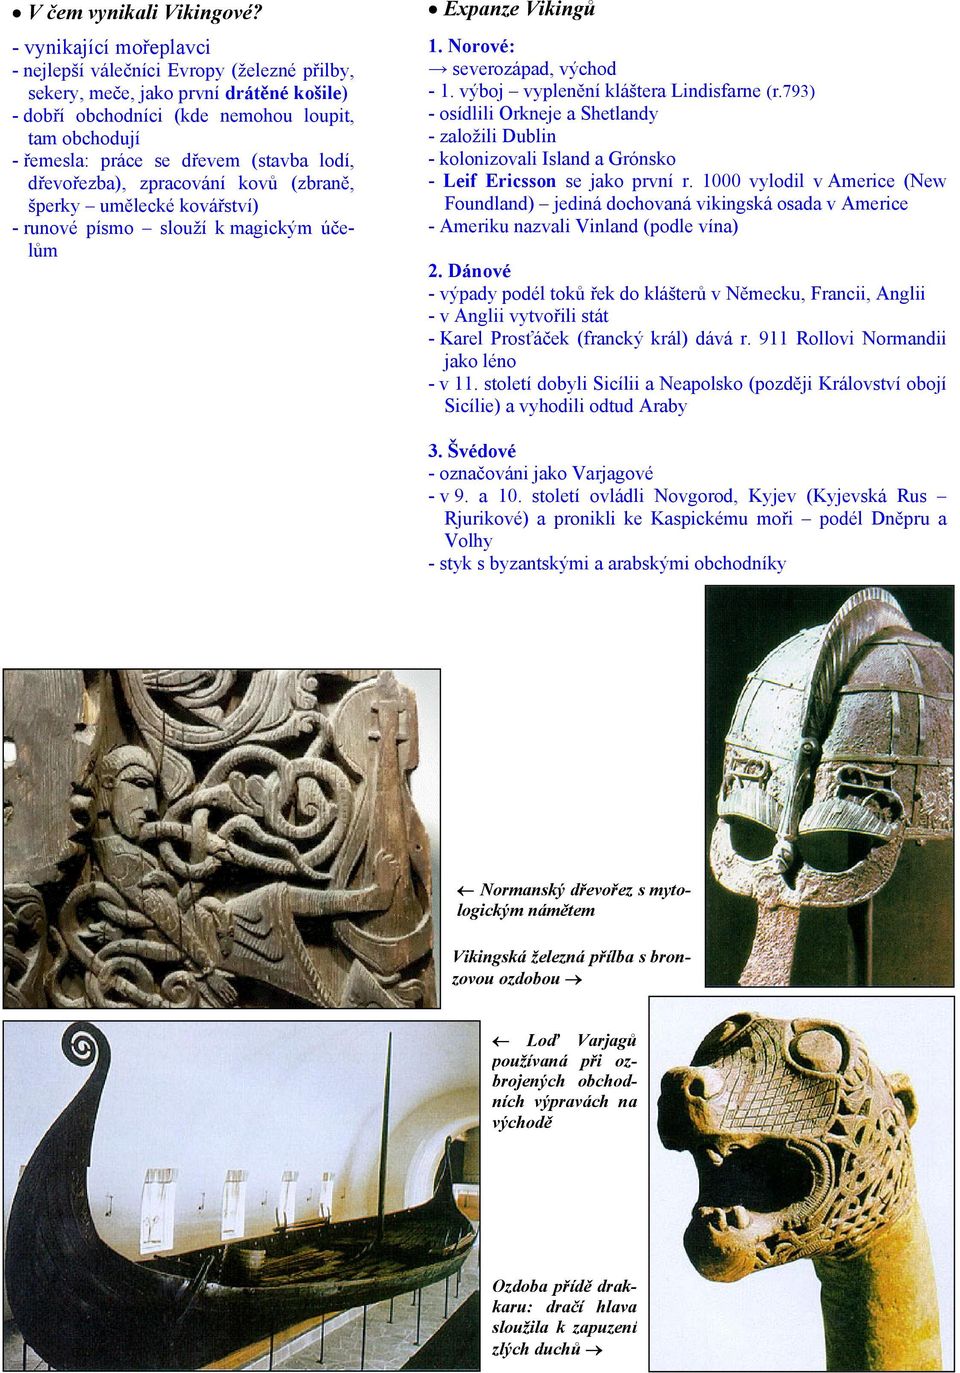 lodí, dřevořezba), zpracování kovů (zbraně, šperky umělecké kovářství) - runové písmo slouží k magickým účelům Expanze Vikingů 1. Norové: severozápad, východ - 1.